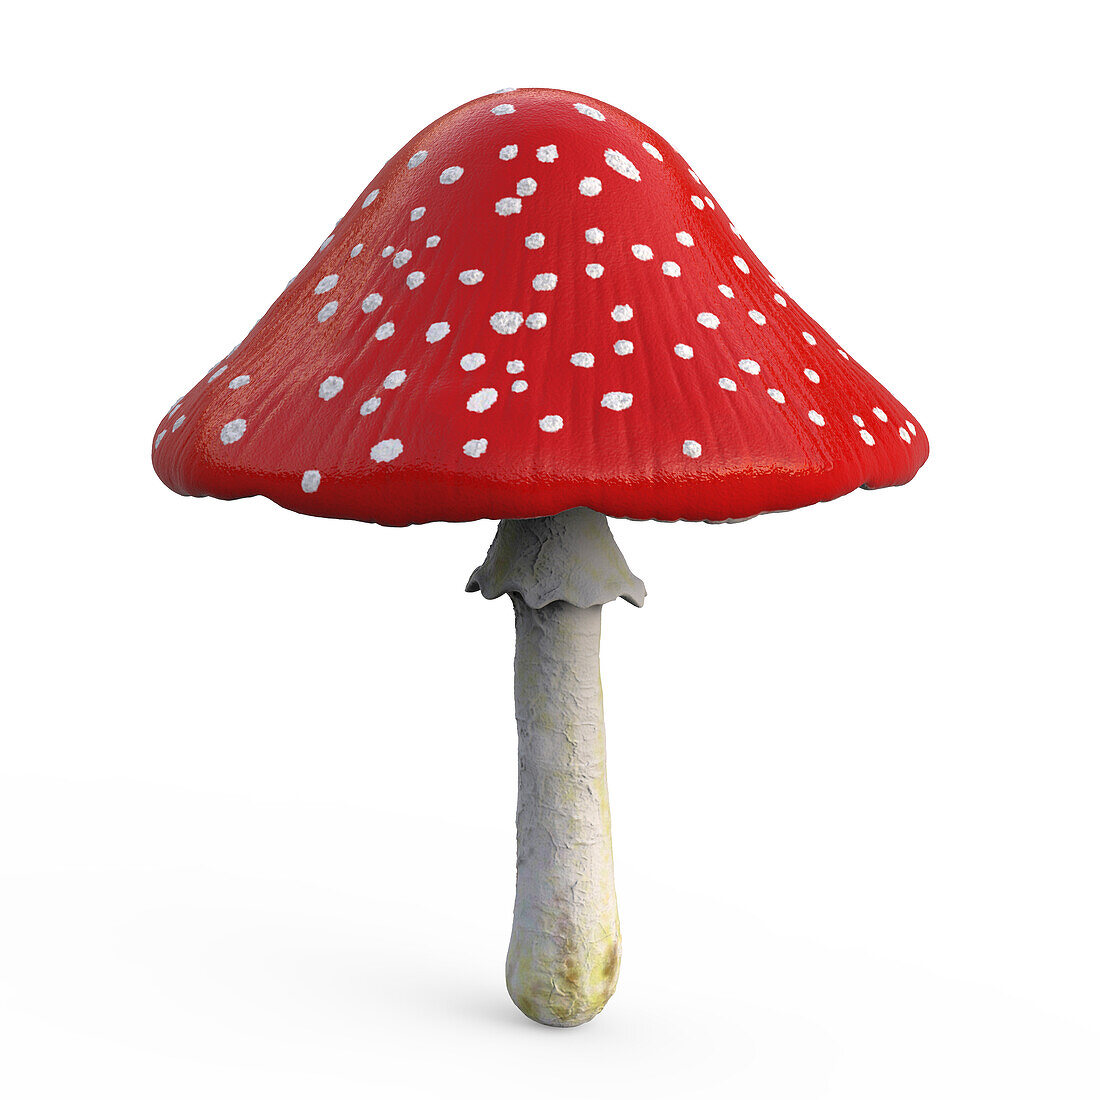 Fly agaric mushroom, illustration